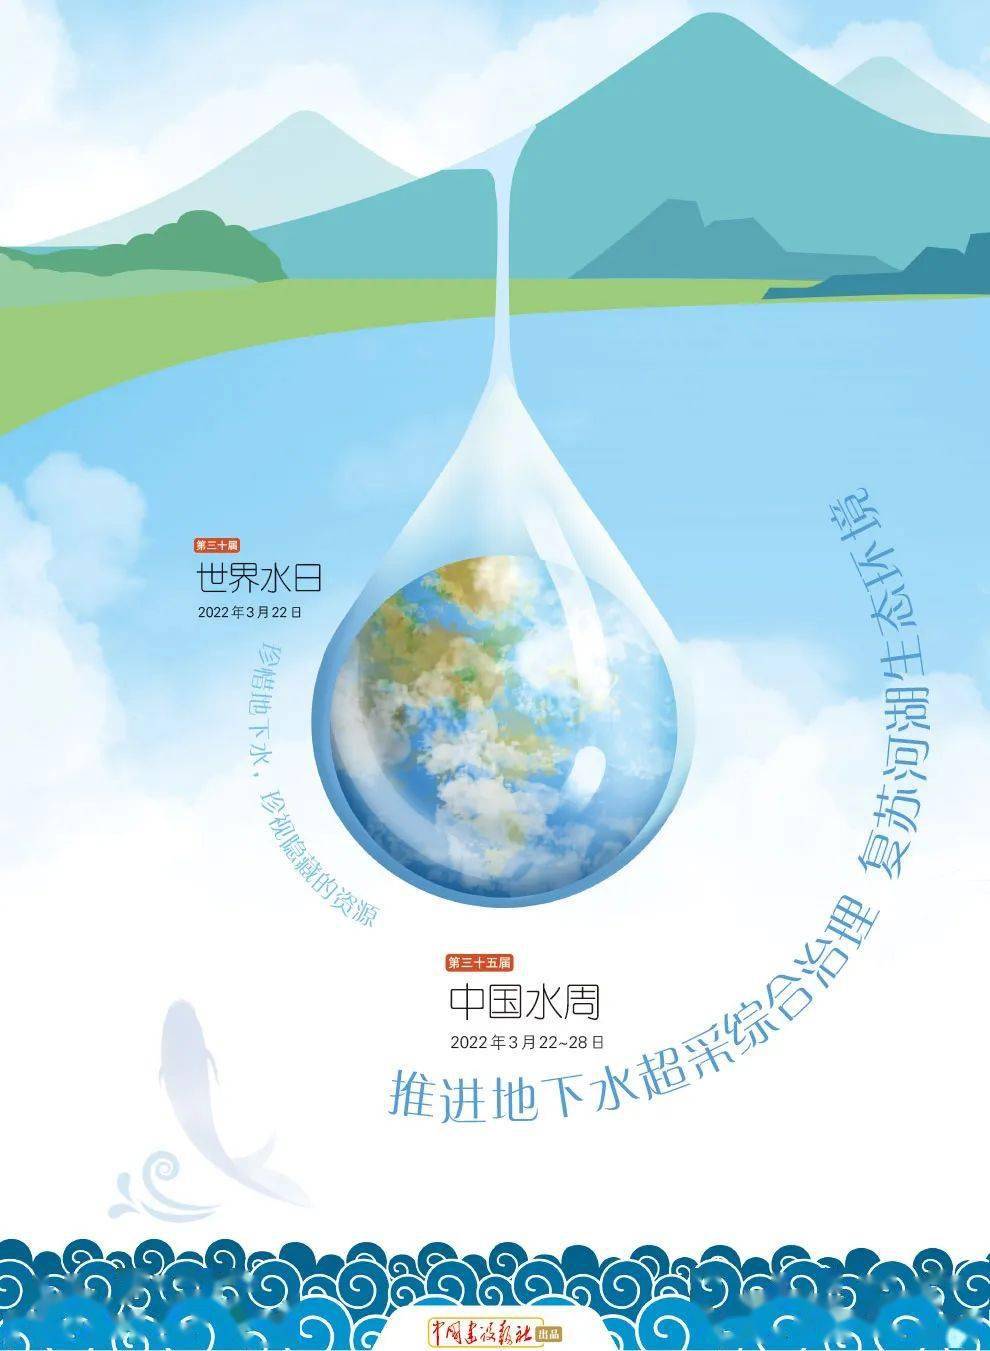 世界水日中国水周跟小筑一起节约用水行动起来